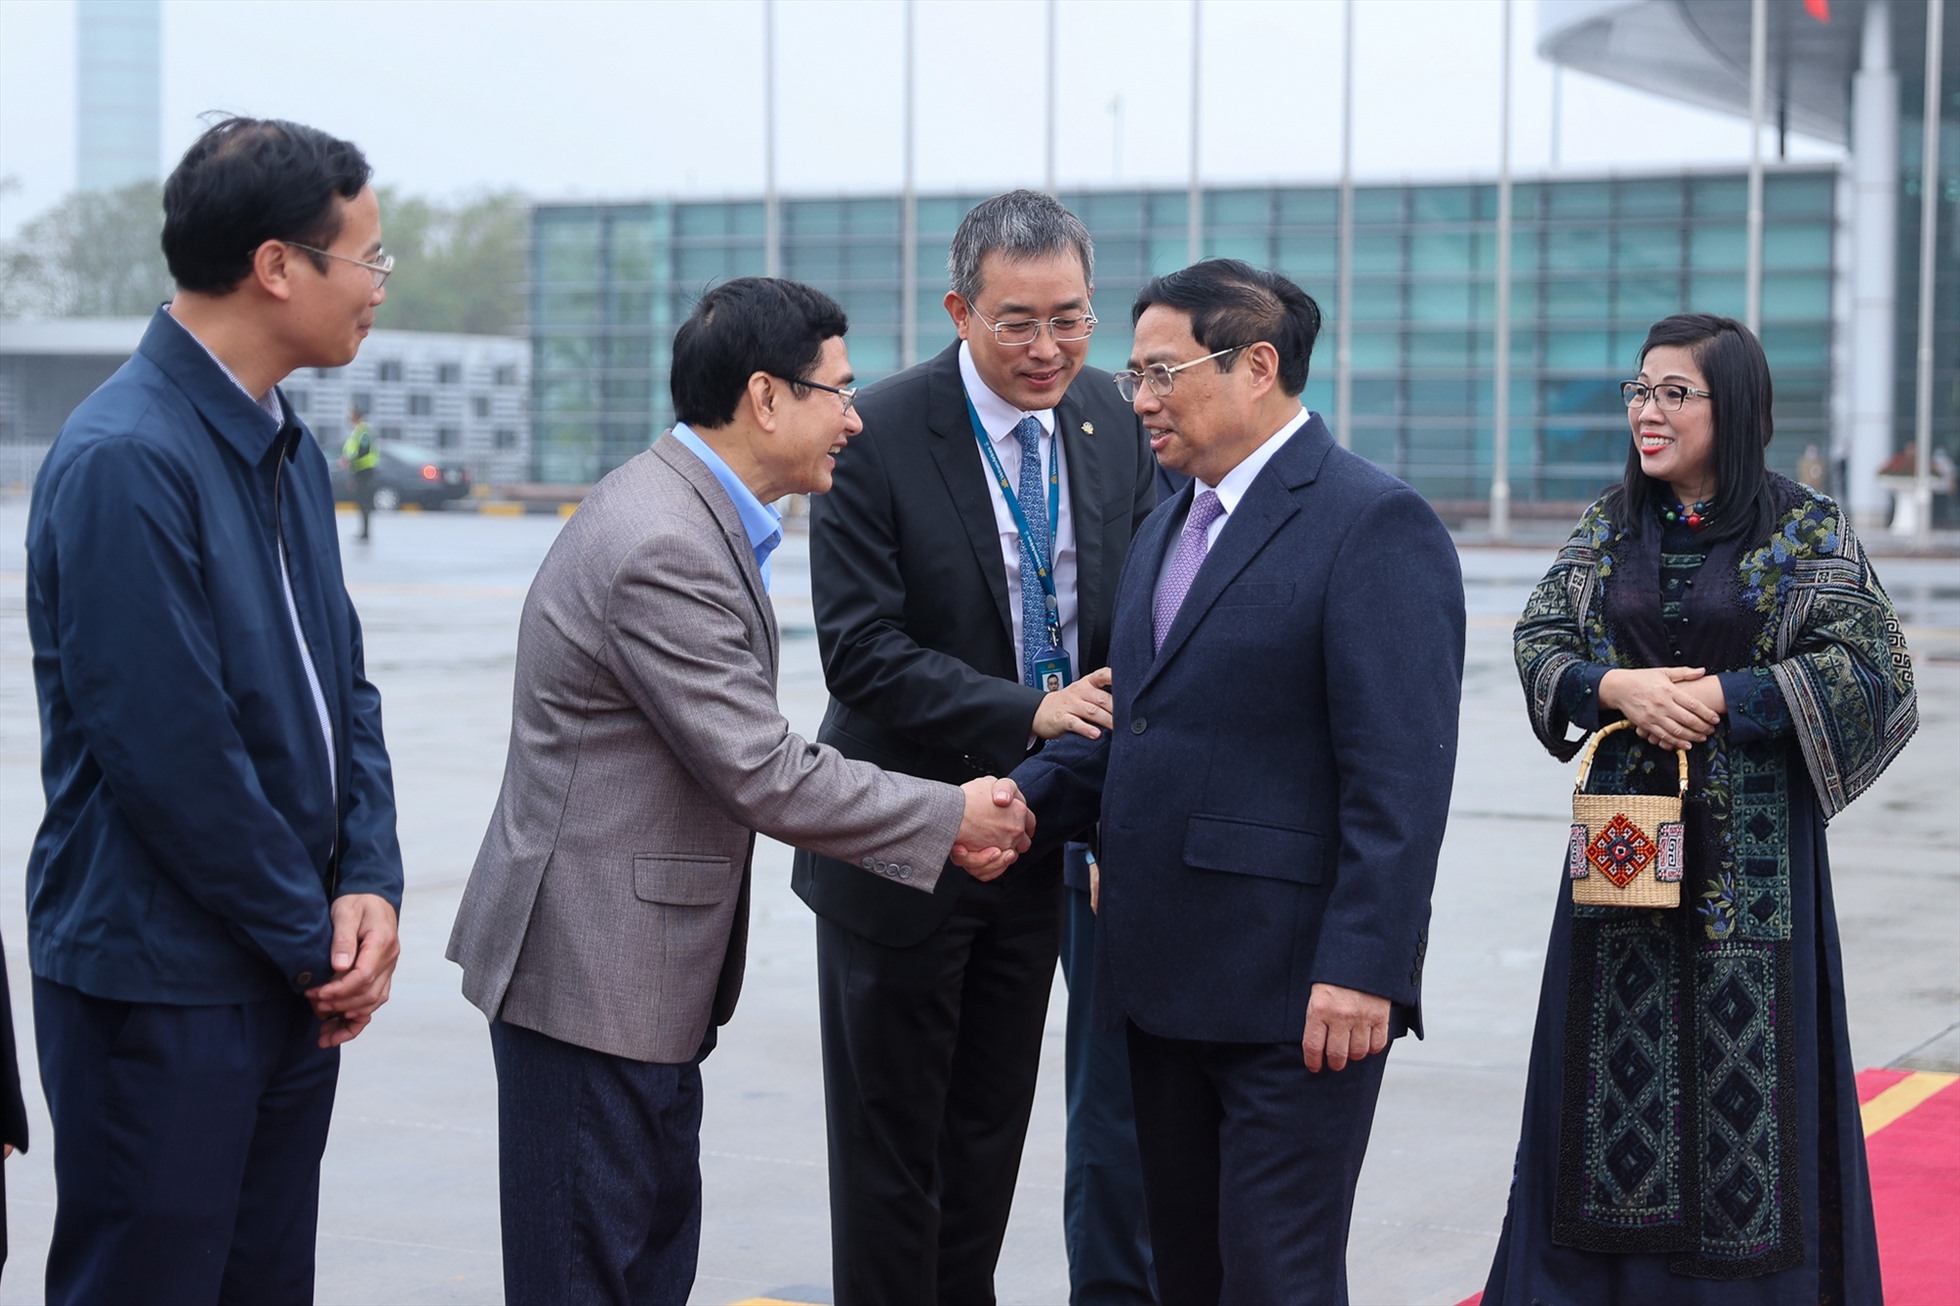 Chuyến thăm góp phần nâng tầm hợp tác giữa Việt Nam với Singapore và Brunei Darussalam. Ảnh: VGP